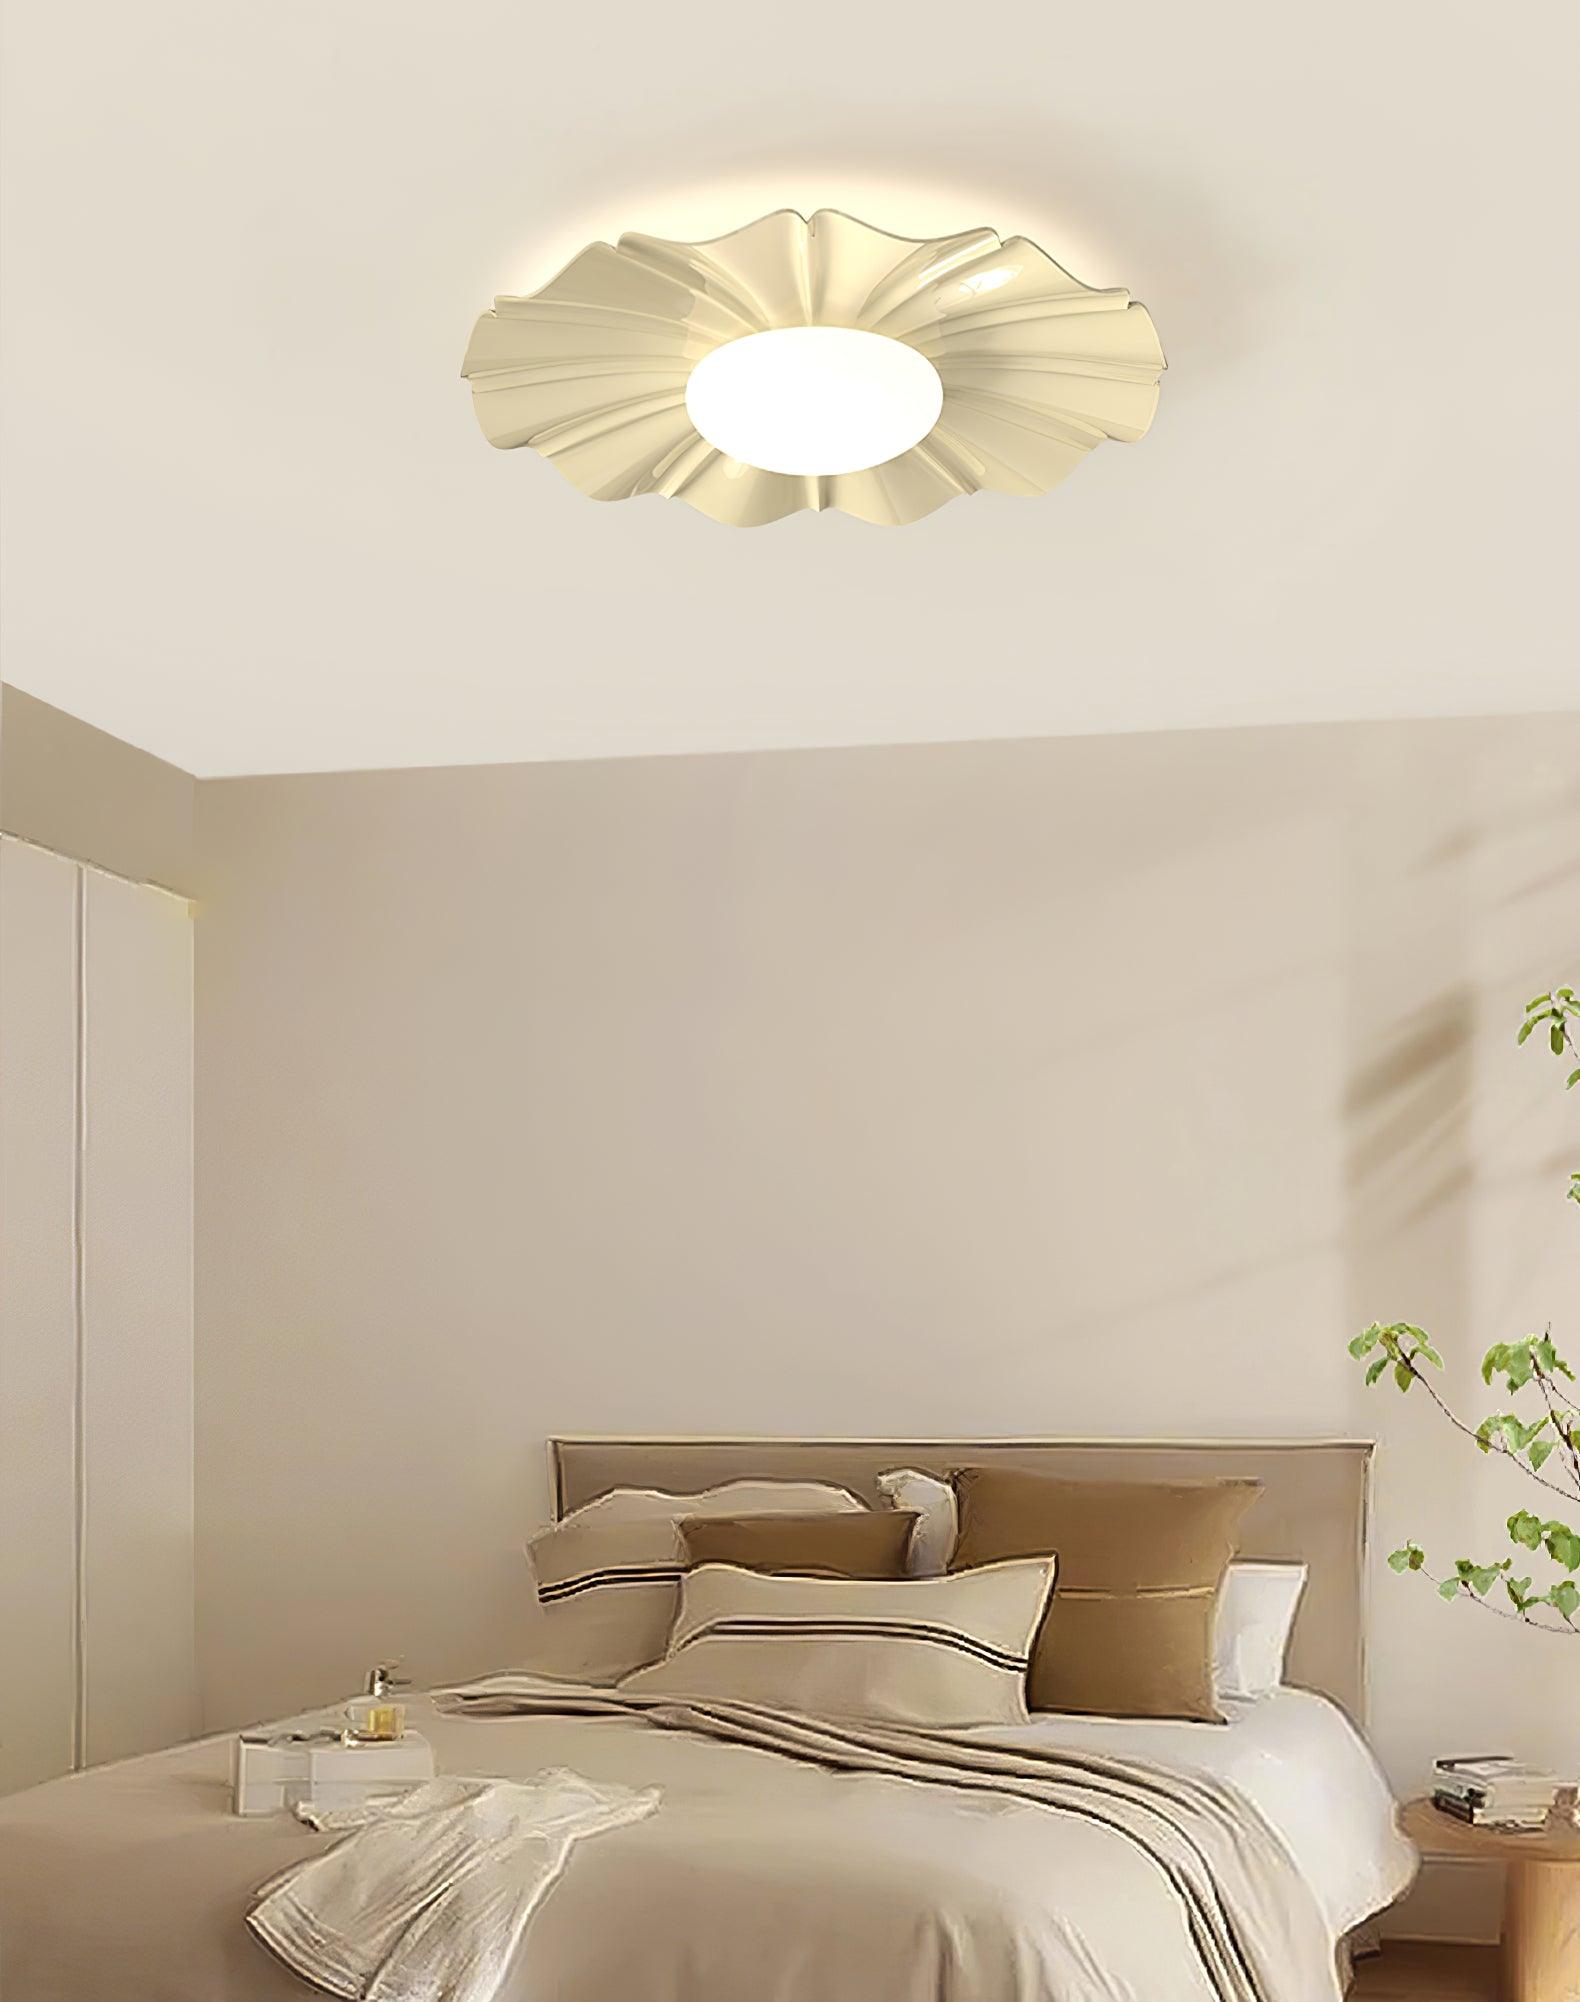 Six-leaf Flower Kids Room Ceiling Lamp – Vakkerlight